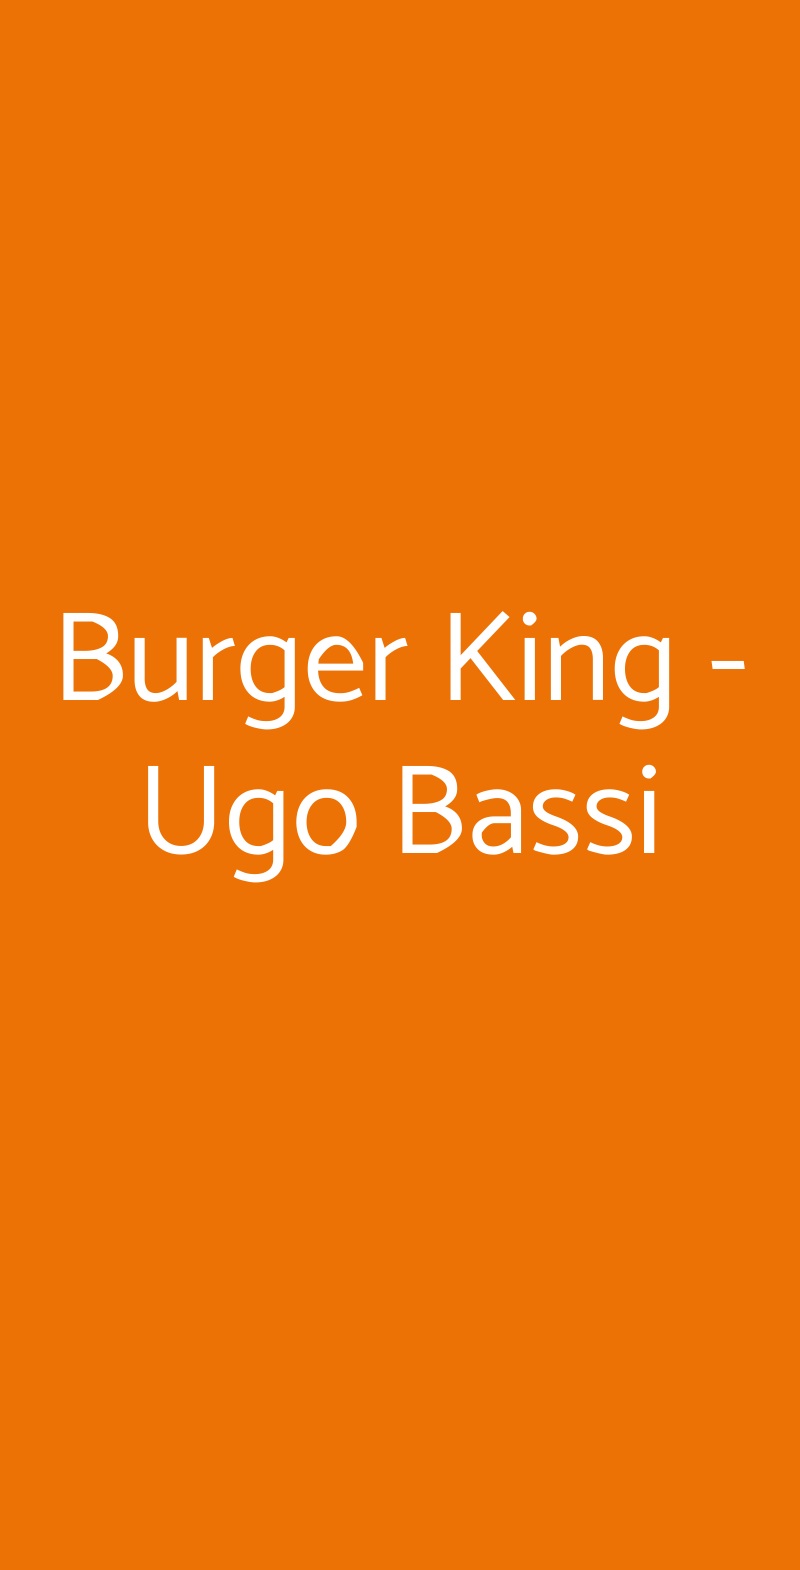 Burger King - Ugo Bassi Bologna menù 1 pagina